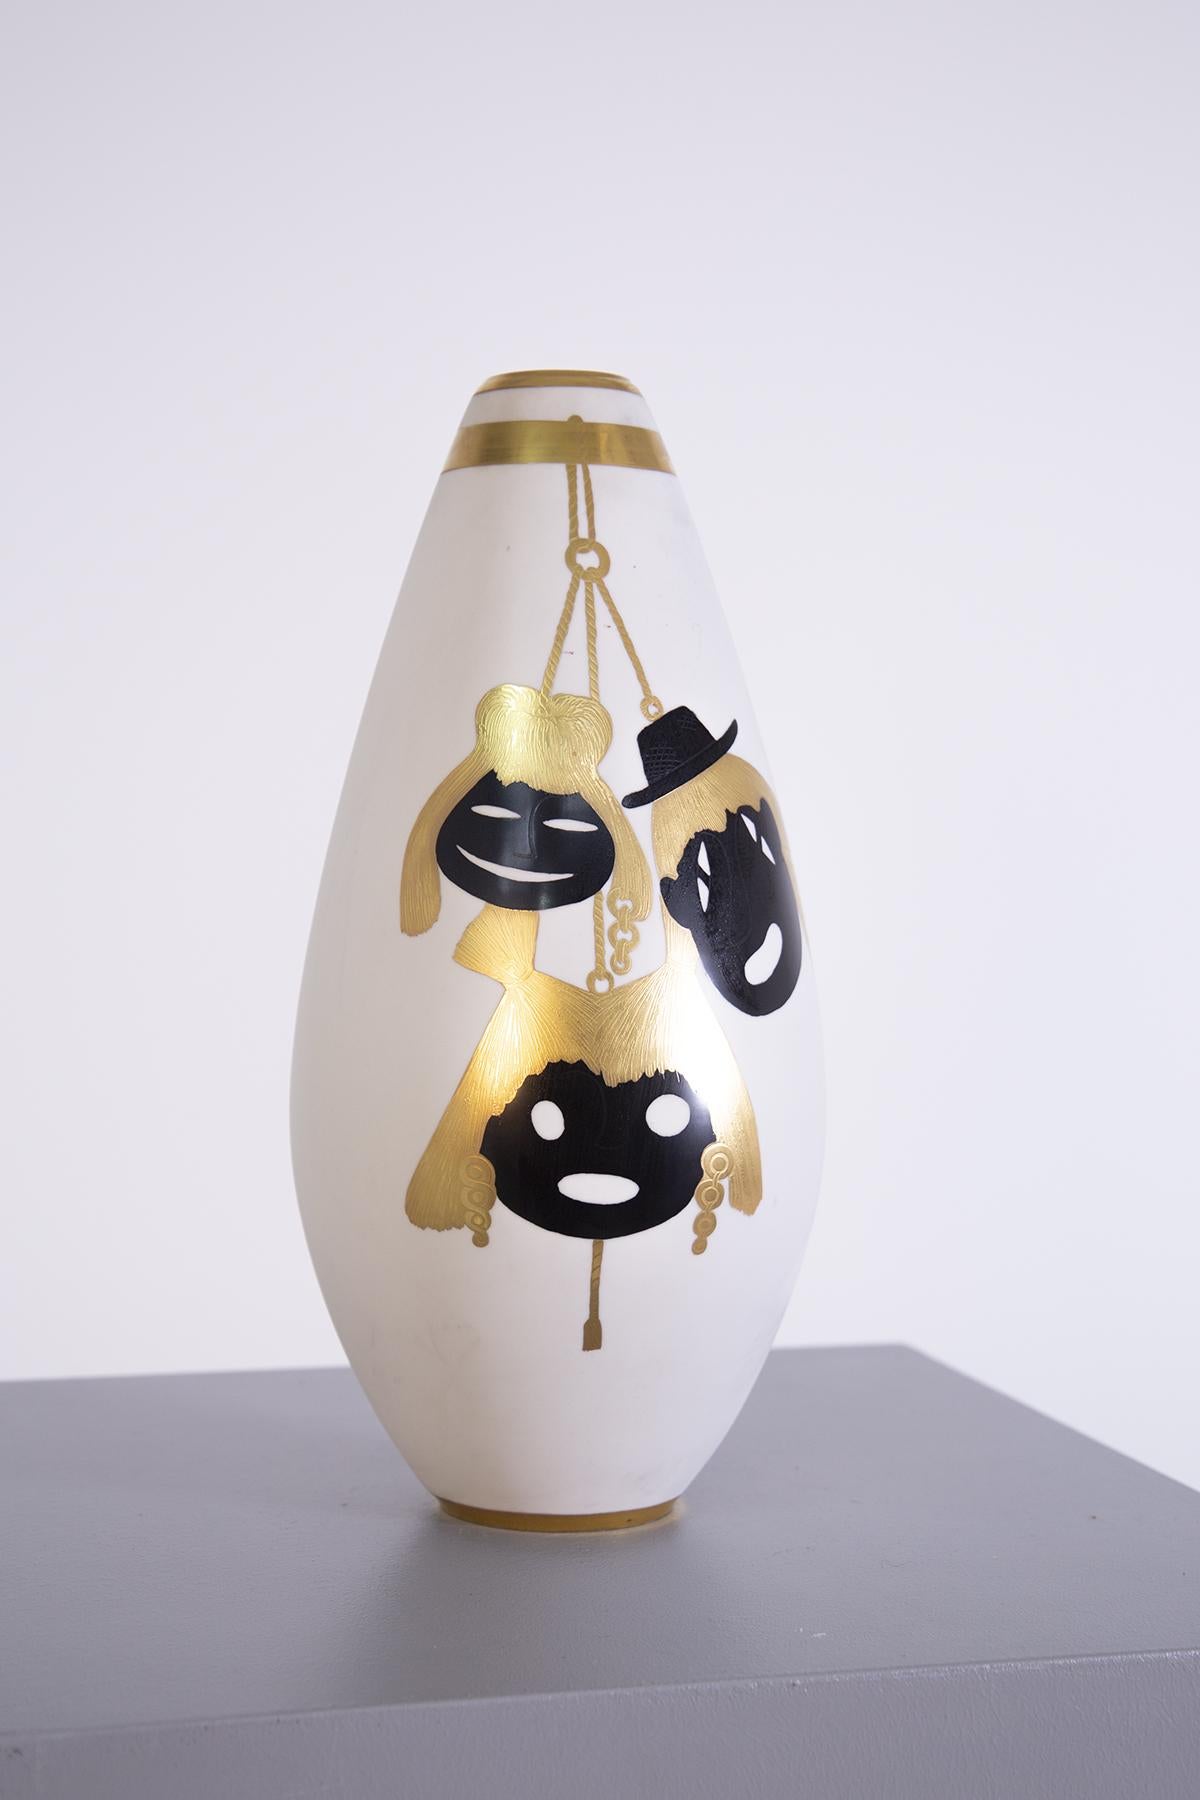 Précieux vase italien des années 1950 réalisé par le grand orfèvre Arrigio Finzi. Le vase a une forme elliptique réalisée en porcelaine. Sa grande particularité réside dans les différents éléments peints en or pur. Les éléments de Glie représentés